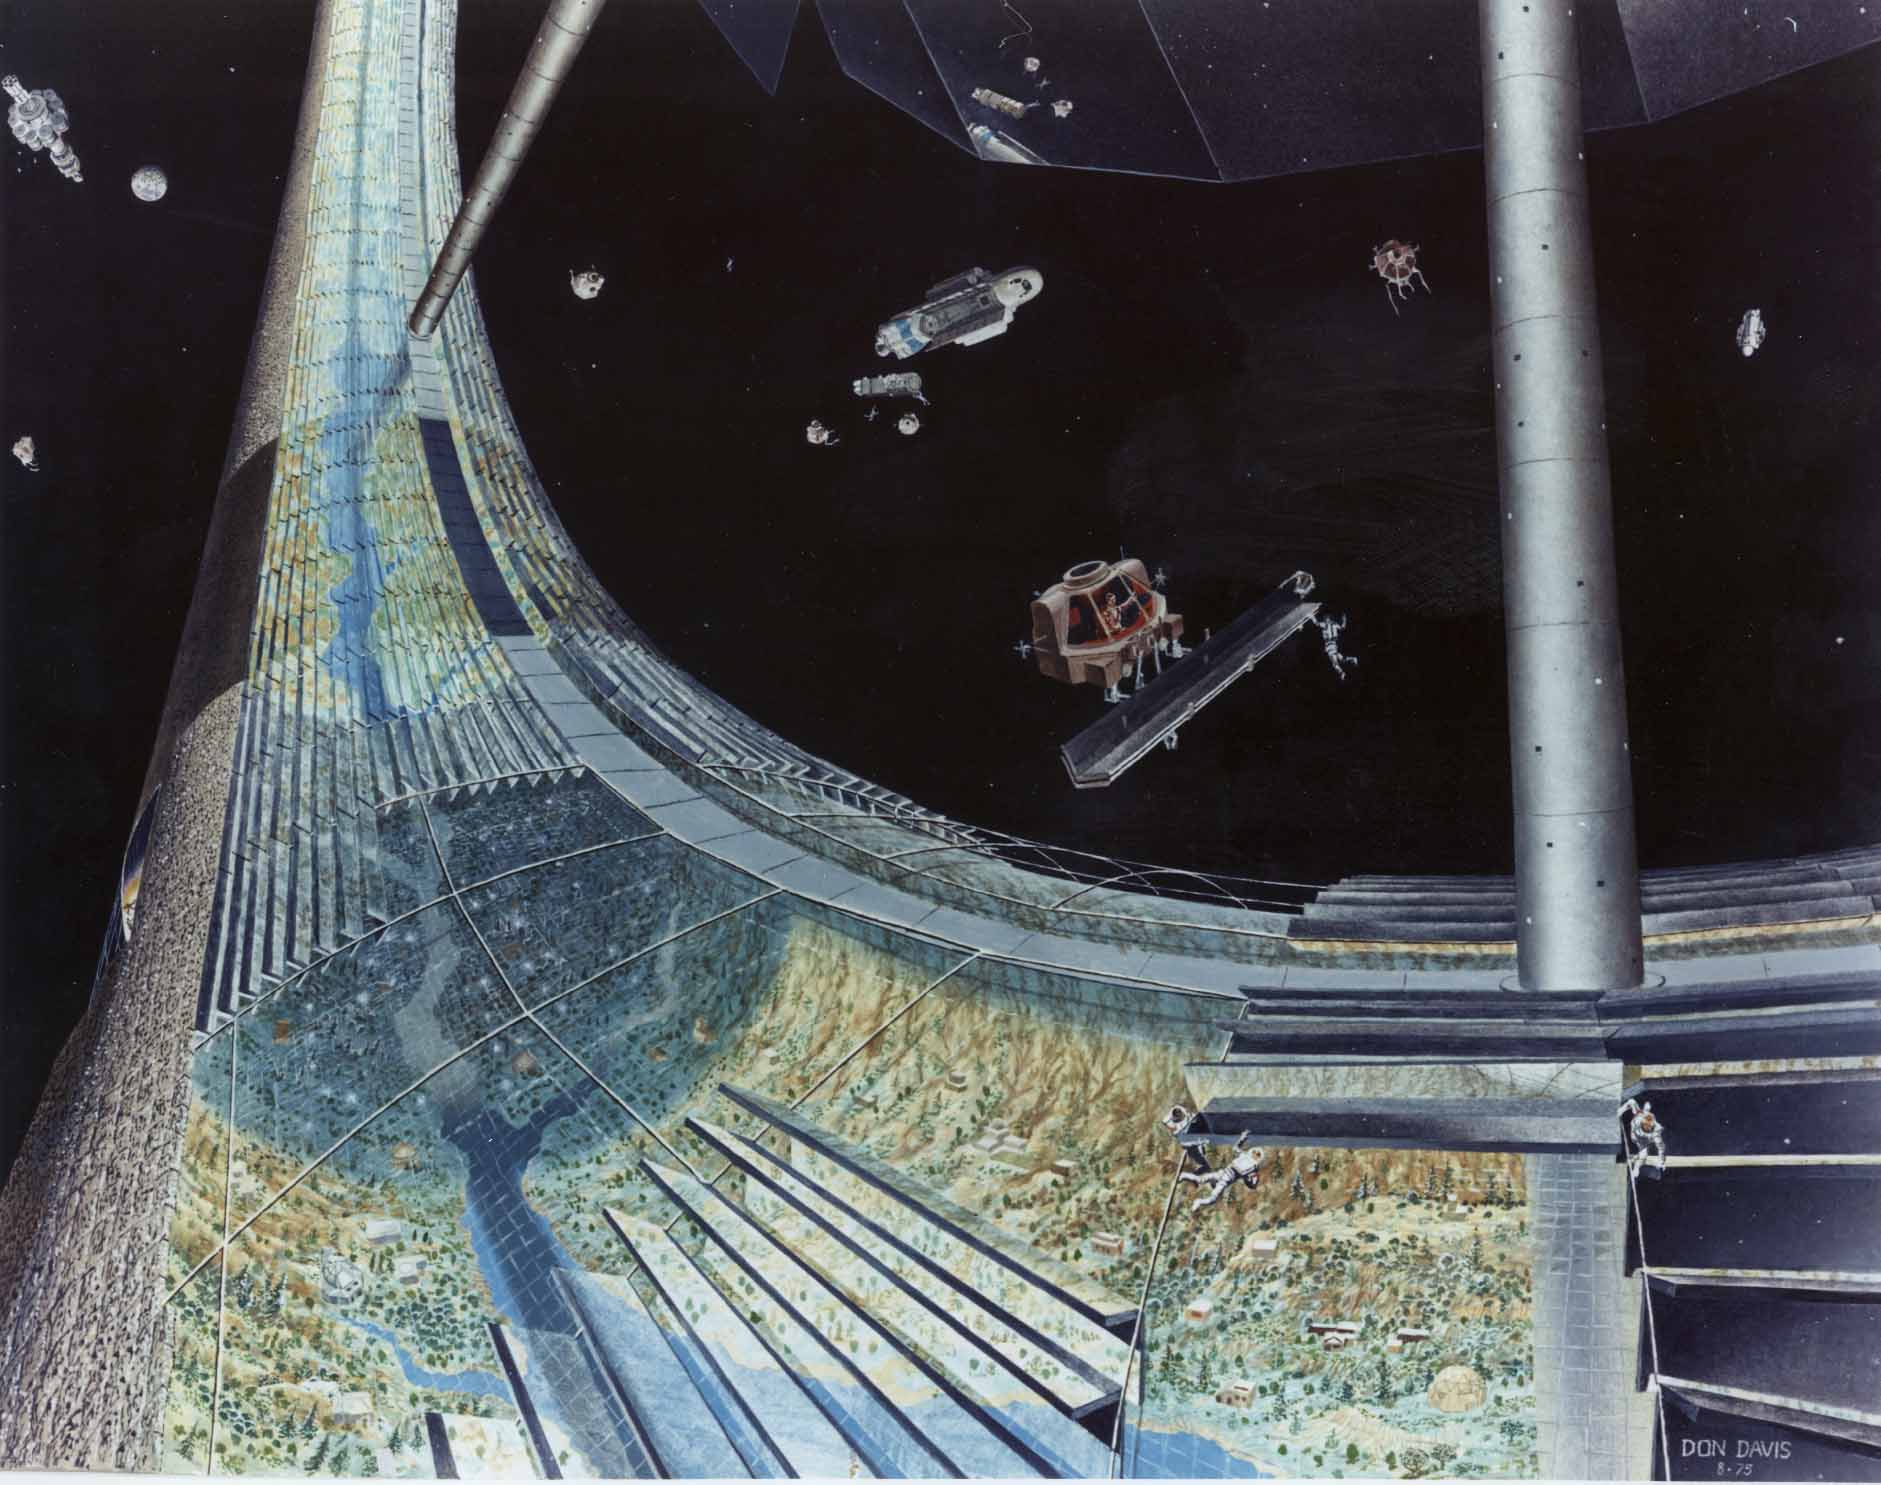 Un exemple des projets de colonie spatiale (ici le concept de planète creuse de Gerard O'Neill) étudiés au début des années 1970 pour permettre à l'humanité de repartir sur de nouvelles bases, débarrassées des archaïsmes du passé et préparer la colonisation des étoiles. Crédit : NASA Ames Research Center